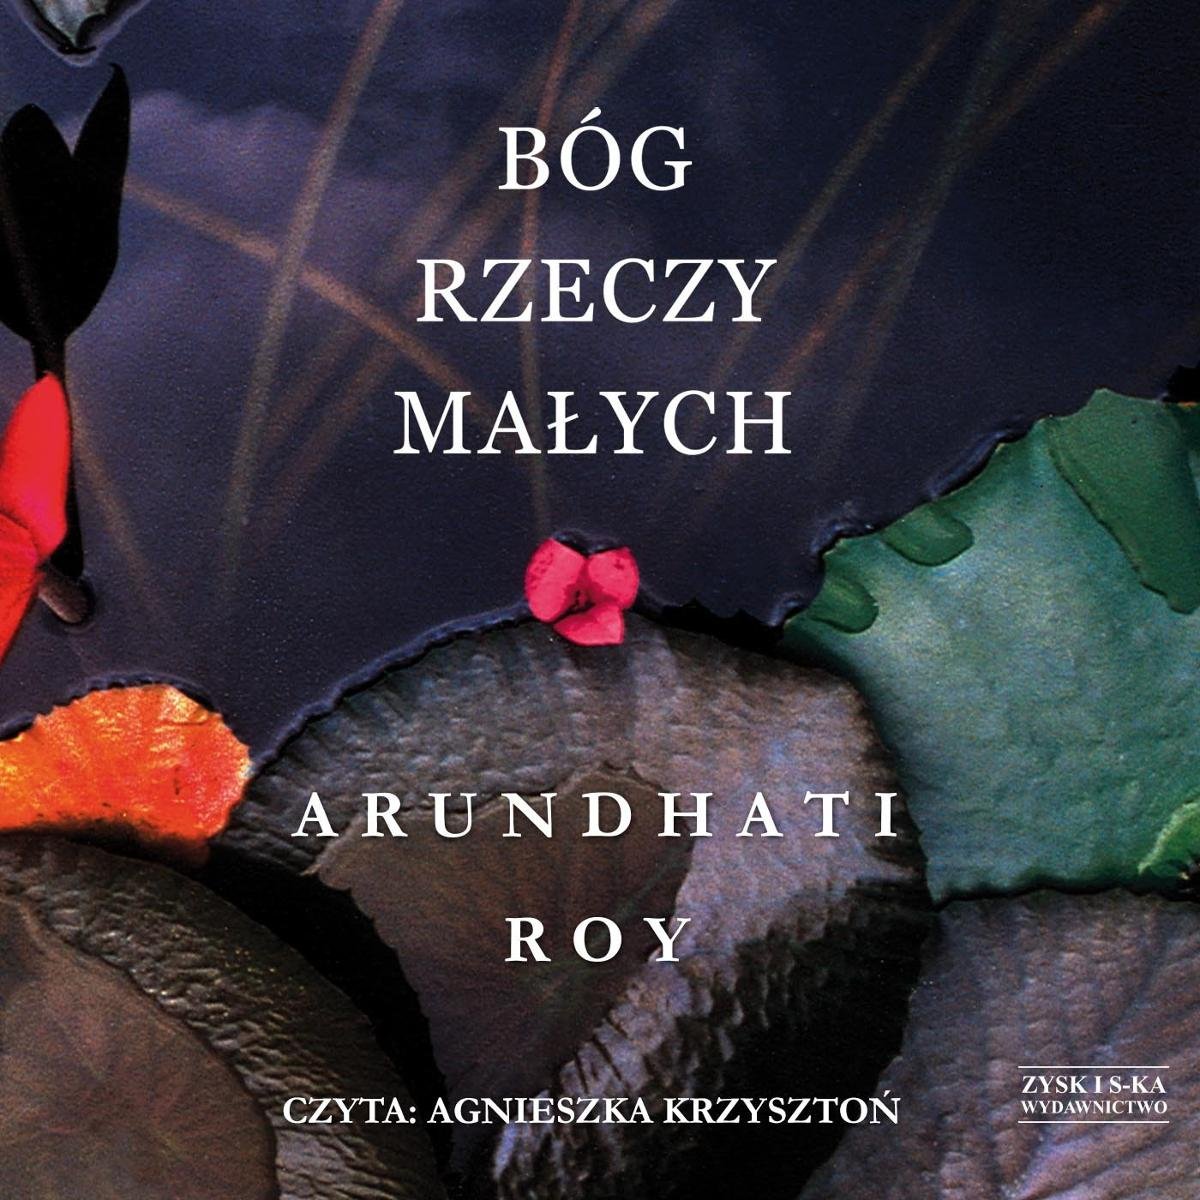 Roy Arundhati - Bóg Rzeczy Małych